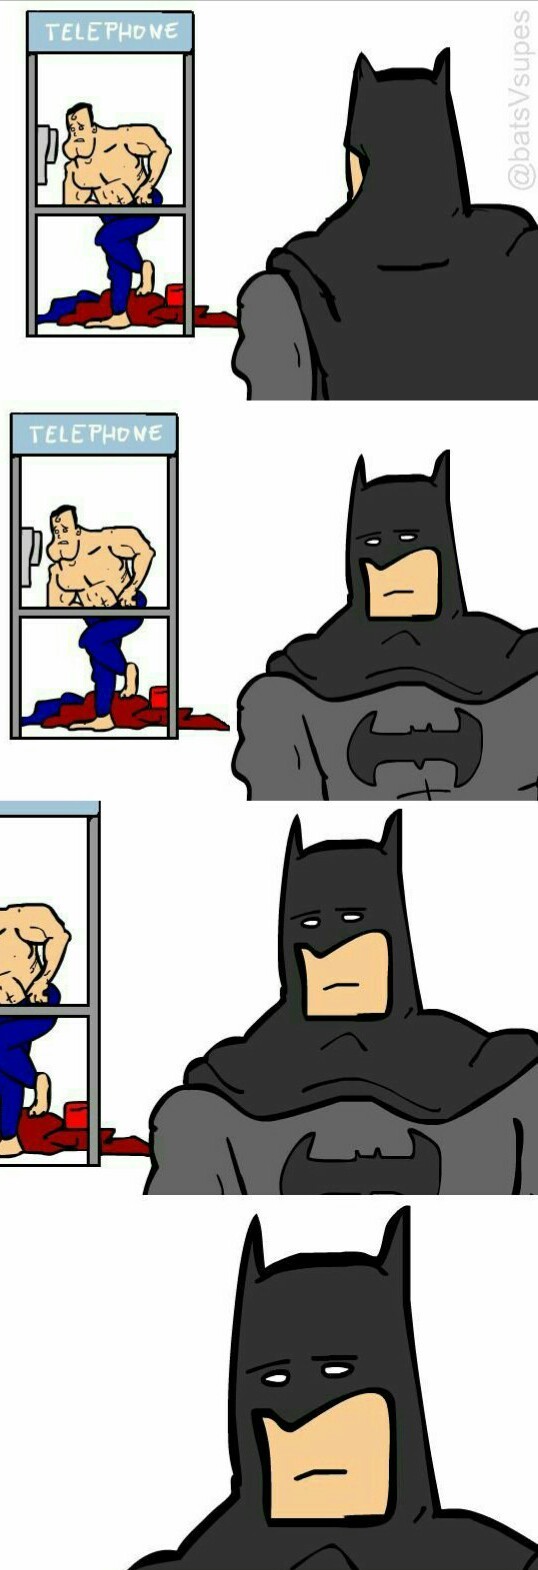 après cette graisse, Batman a été traumatisée. - meme